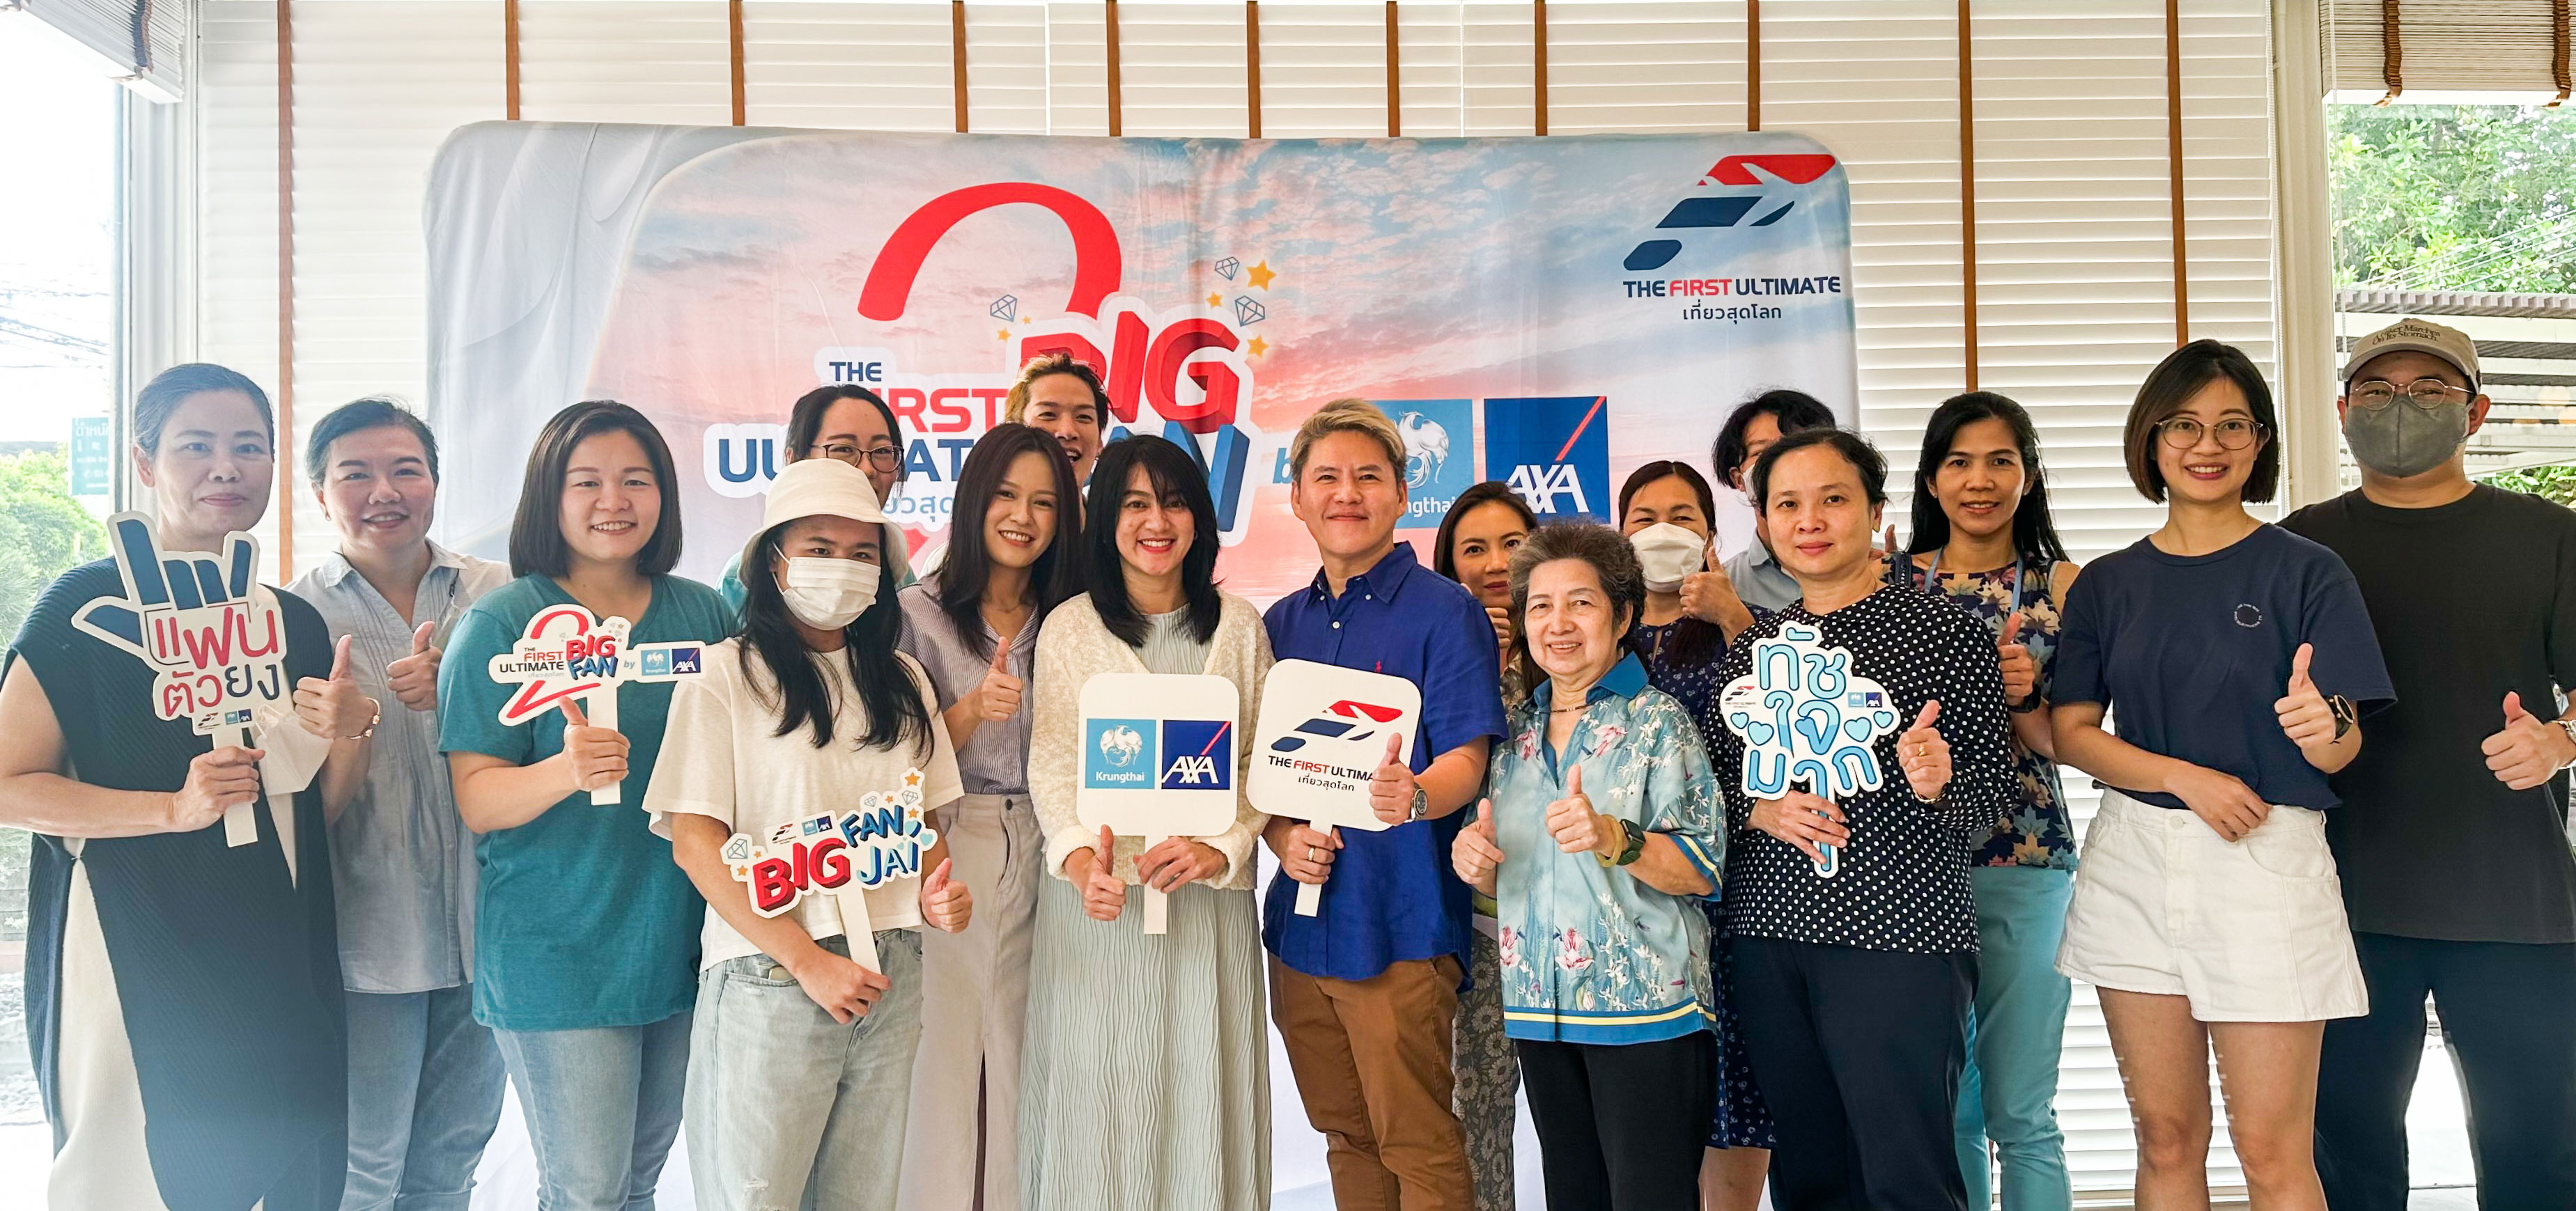 กรุงไทย-แอกซ่า ประกันชีวิต พาลูกค้าคนสำคัญสร้างประสบการณ์ใหม่กับกิจกรรม “Snowy Mooncake Workshop”